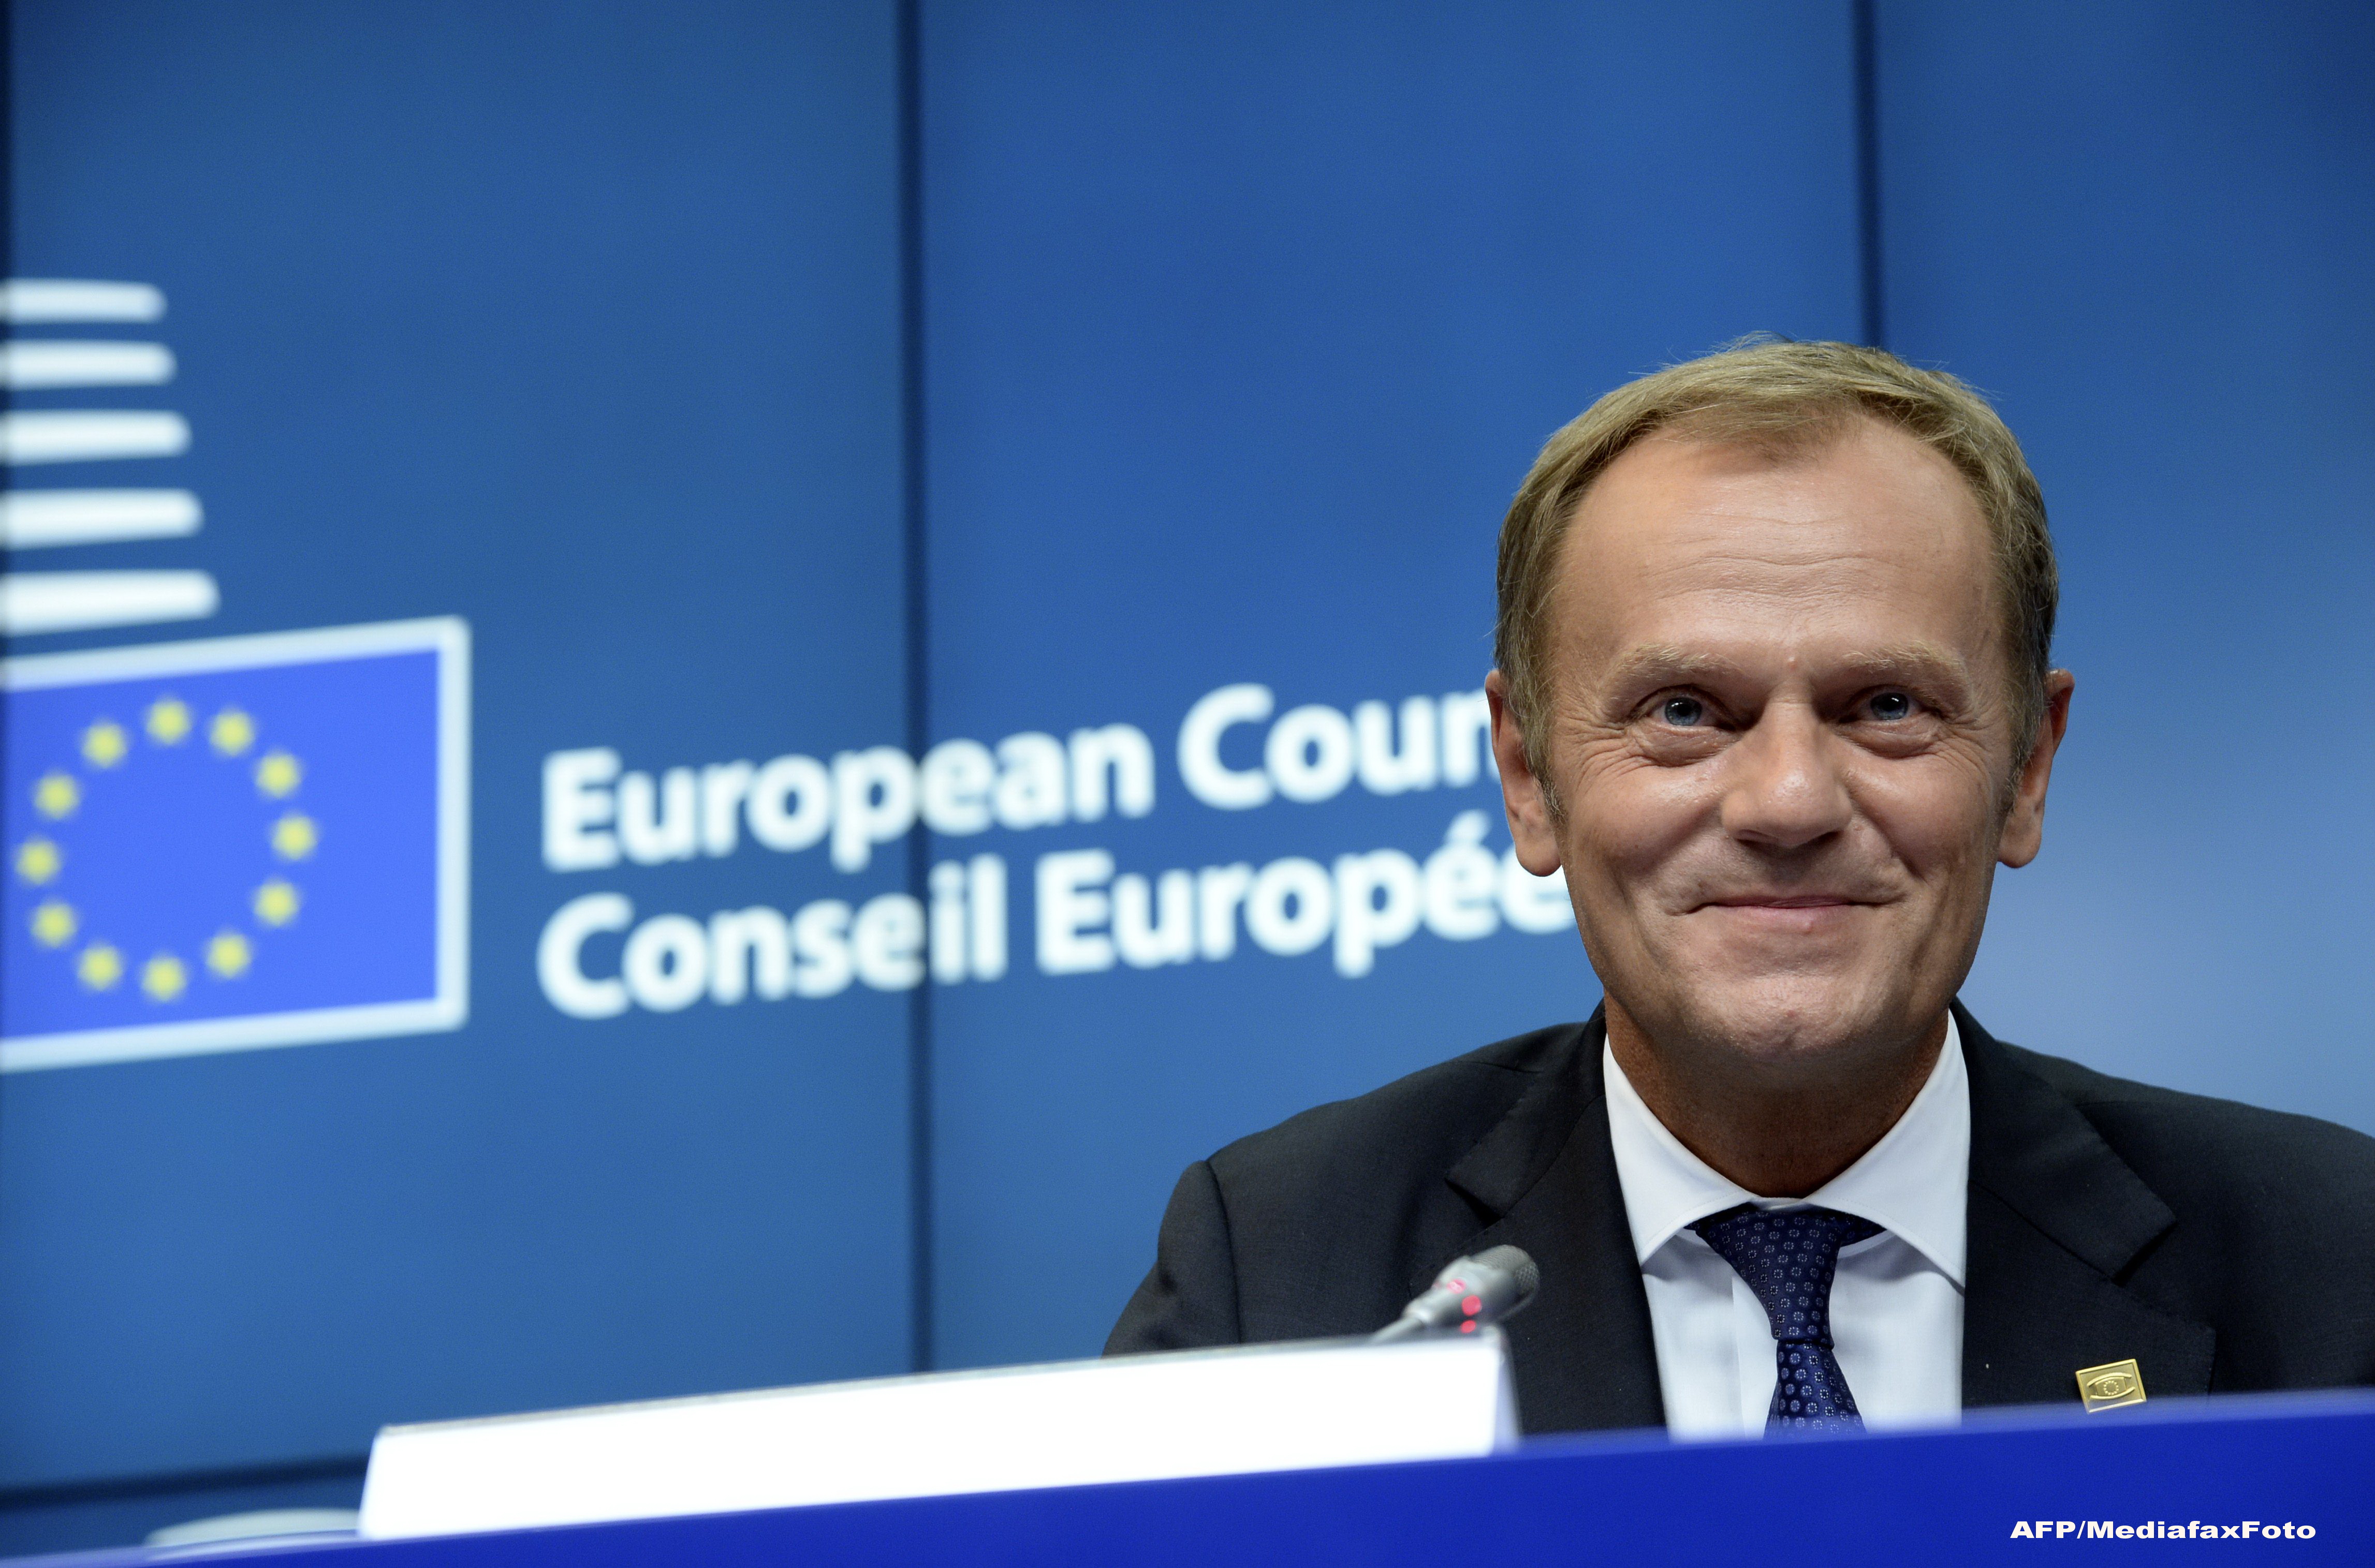 Presedintele Consiliului European, Donald Tusk, promite sa faca 